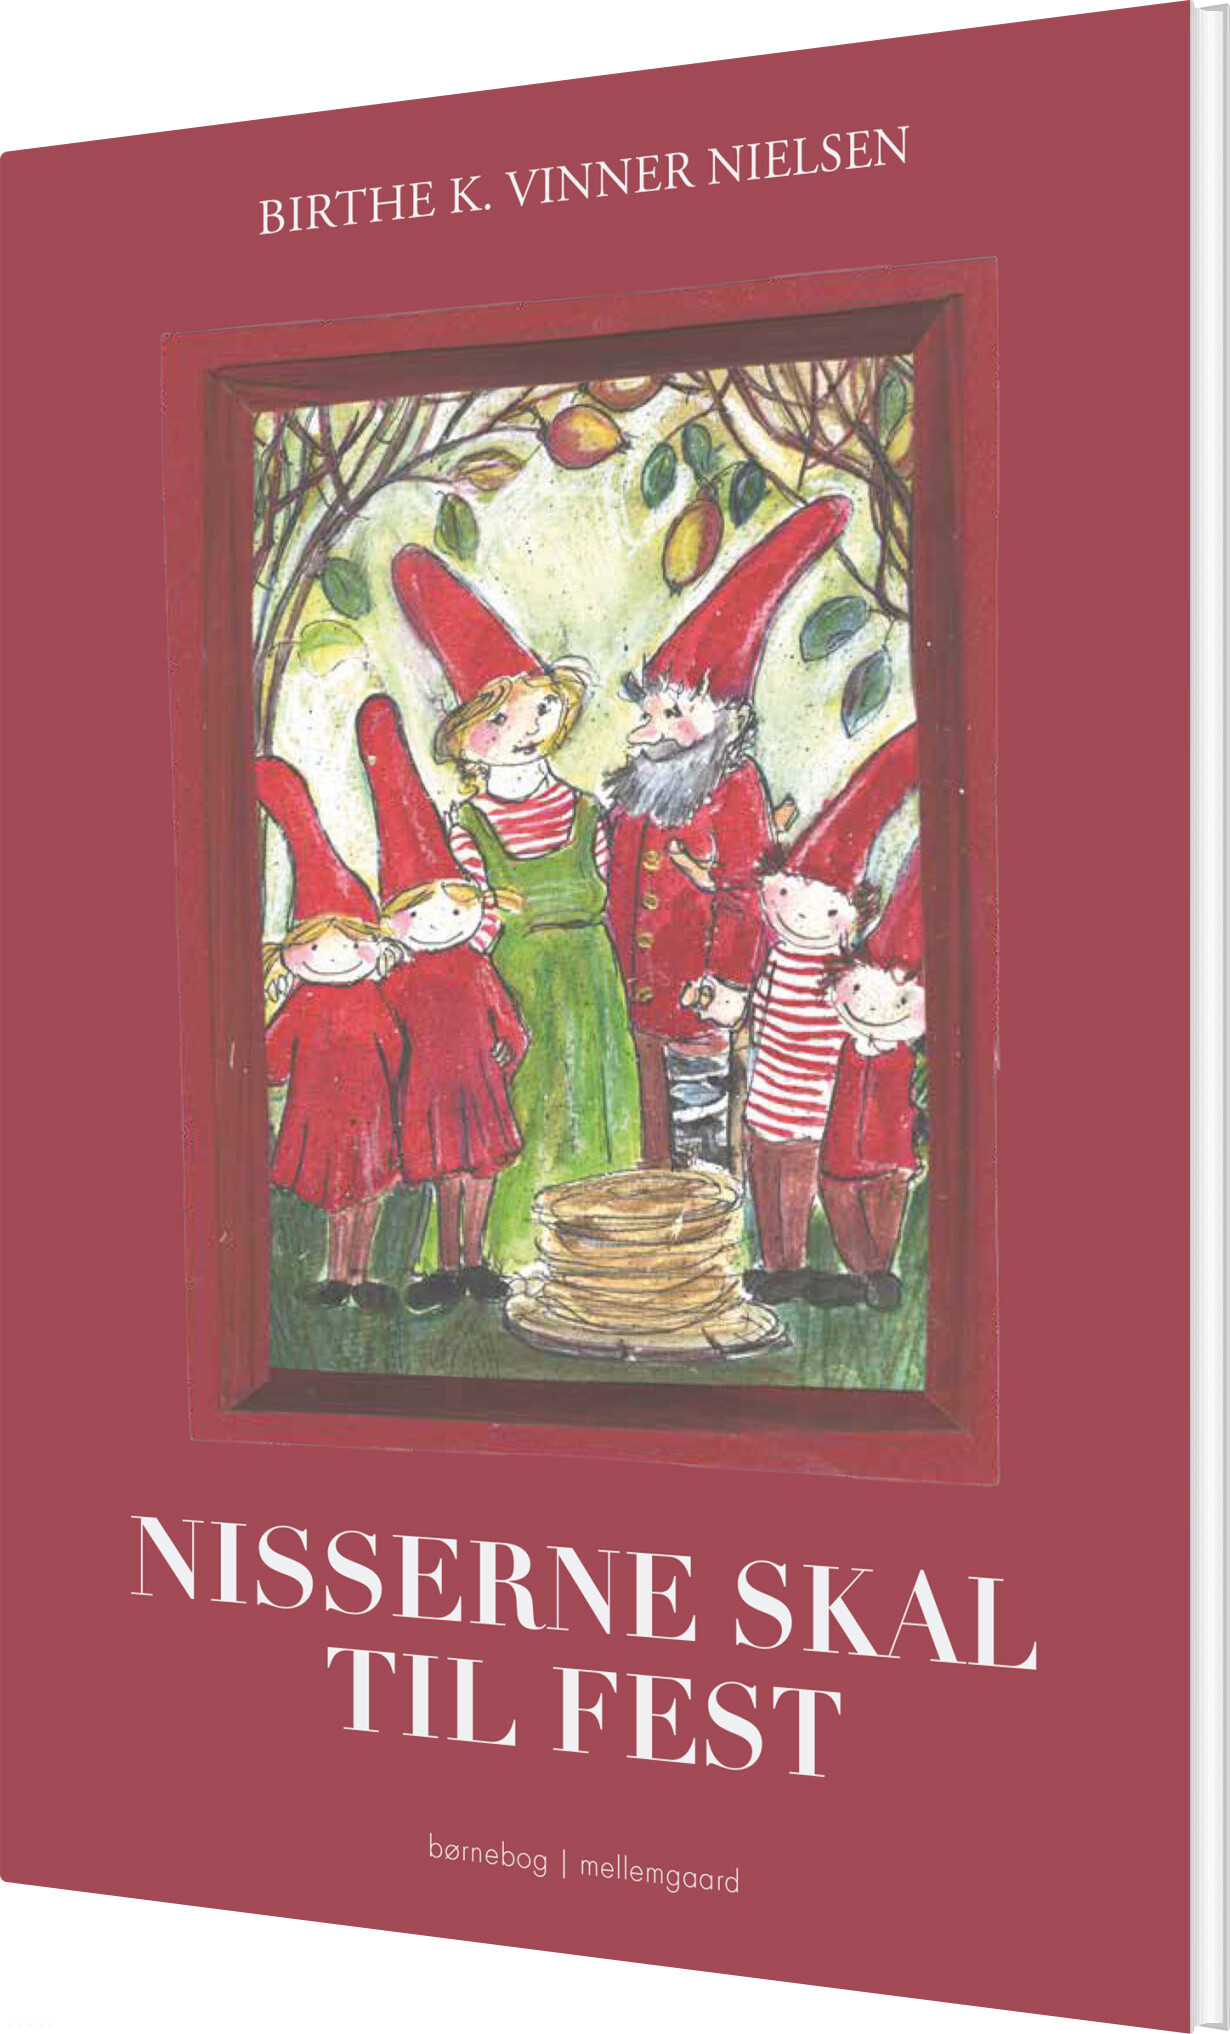 Billede af Nisserne Skal Til Fest - Birthe K. Vinner Nielsen - Bog hos Gucca.dk